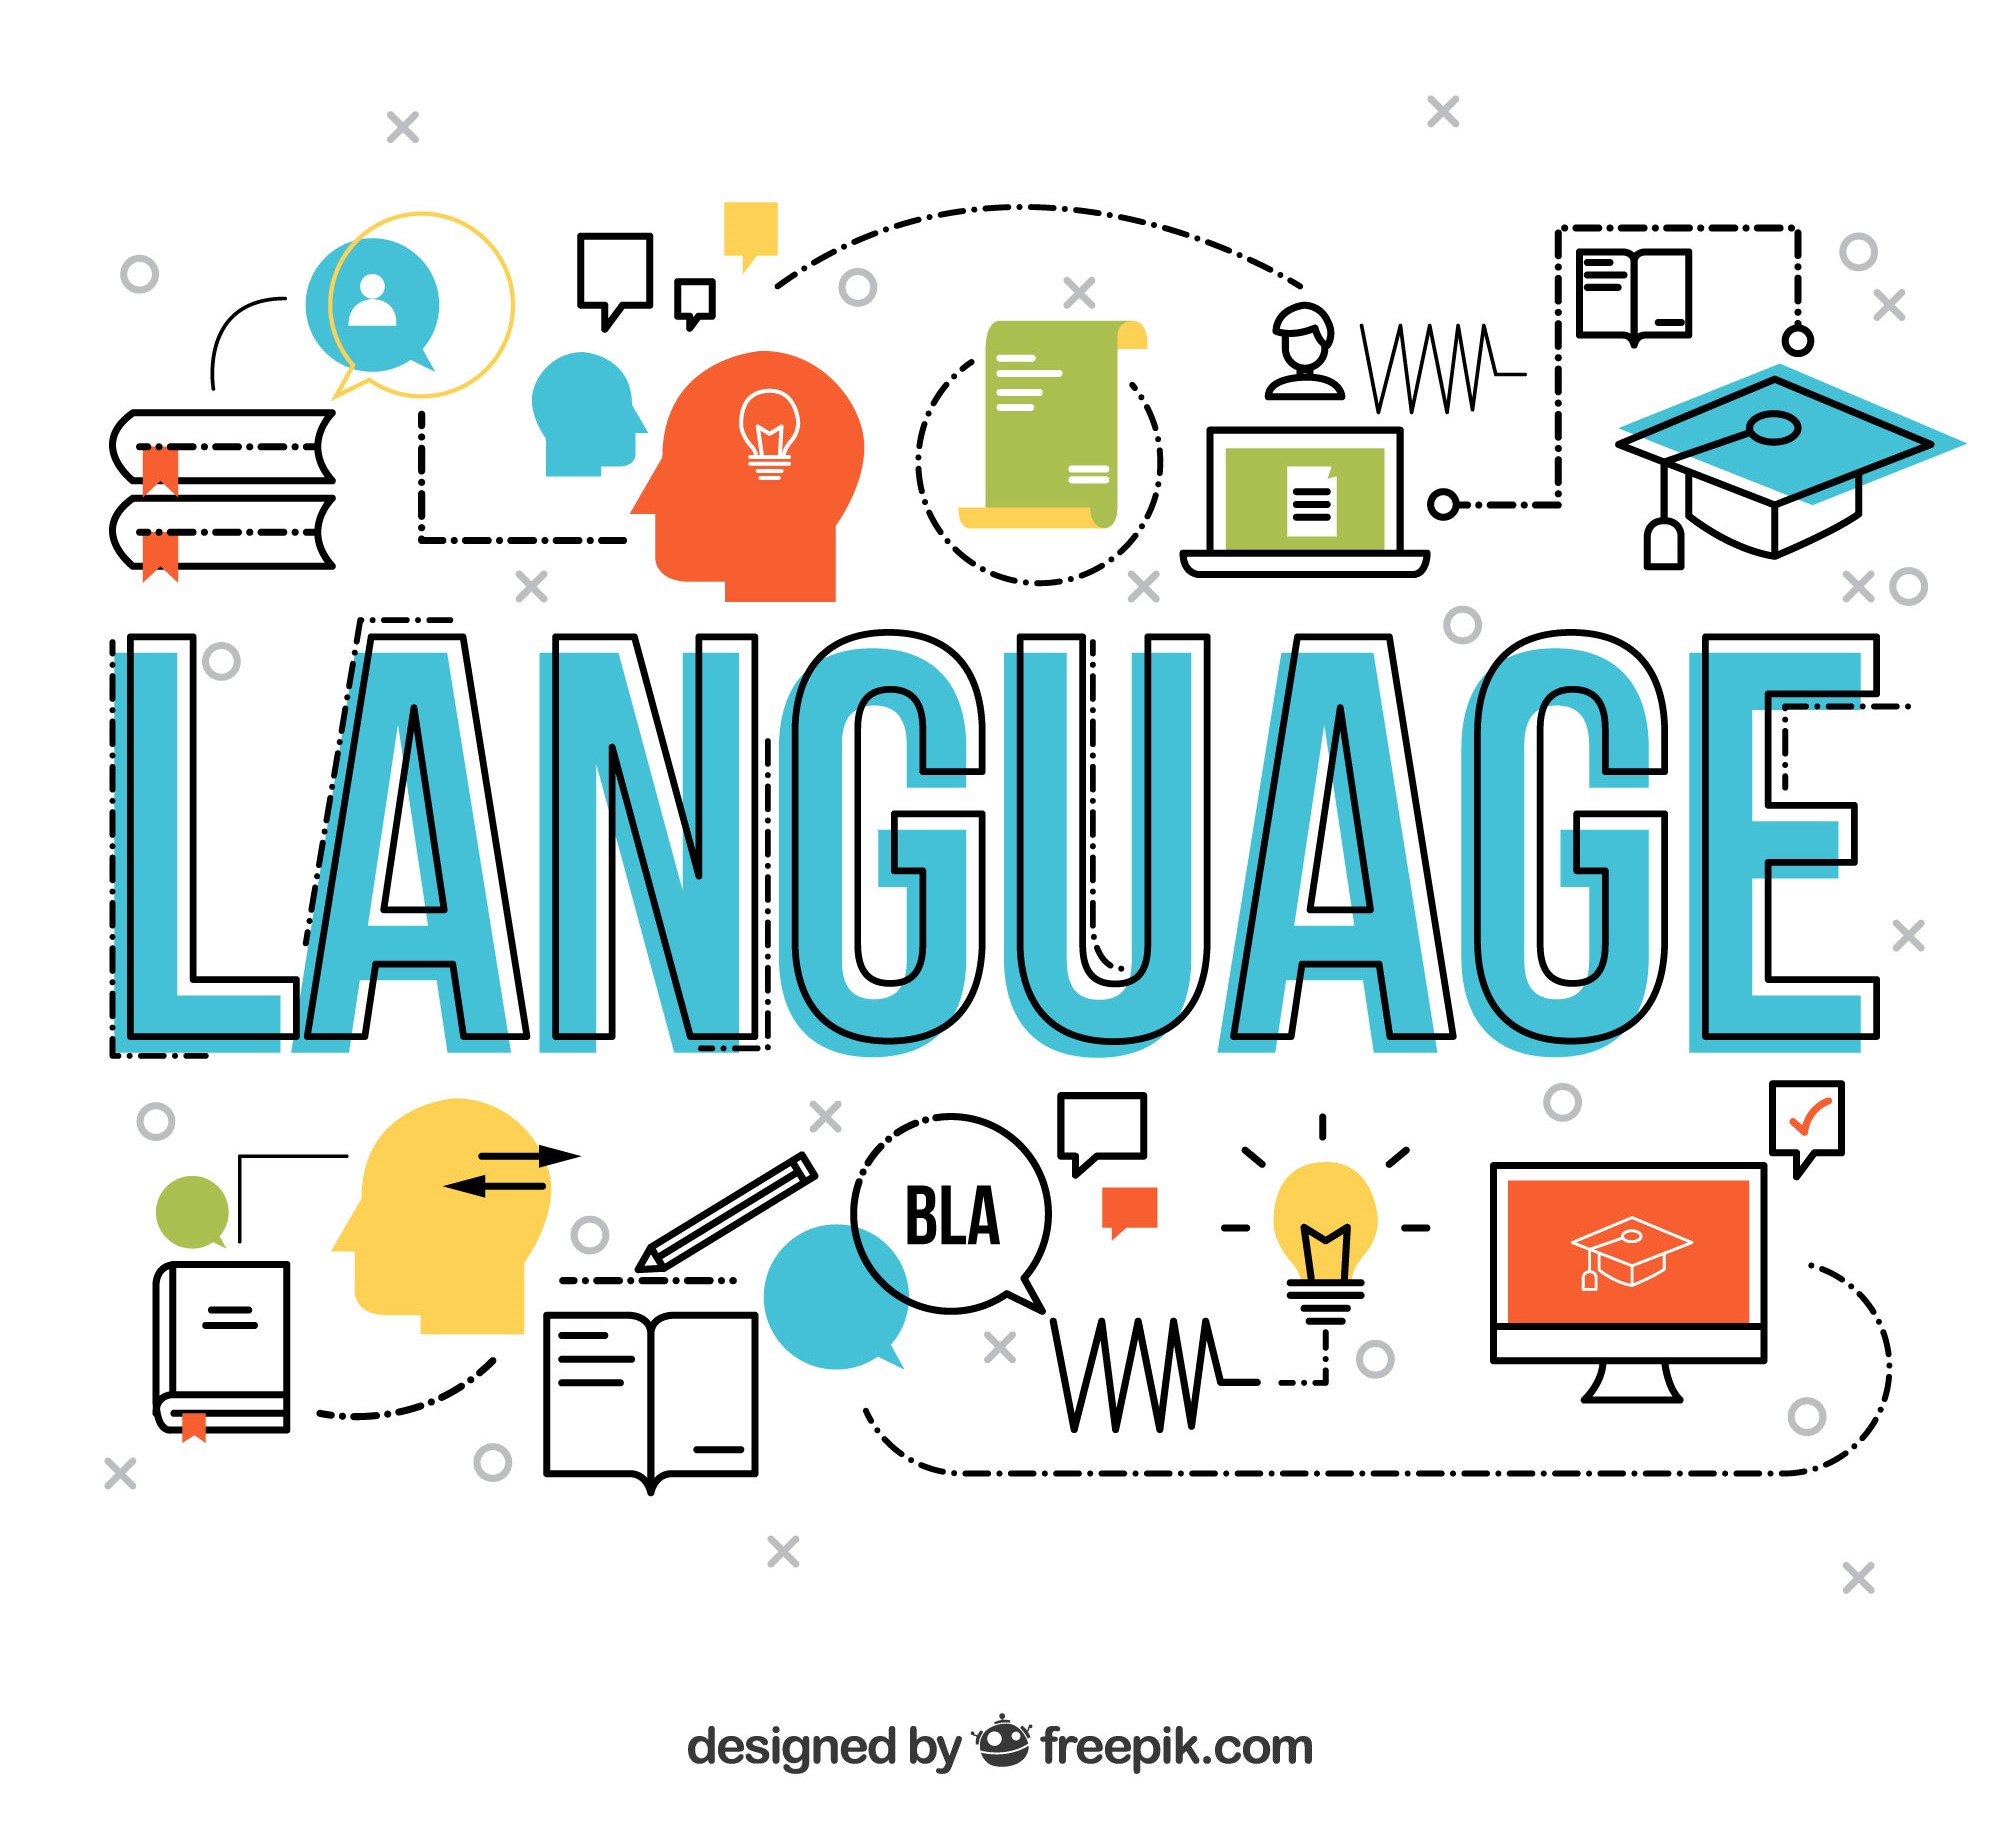 每個語言辨識聲音的方法都不盡相同，這也是外語學習者會面臨的困難之處。（圖／freepik）